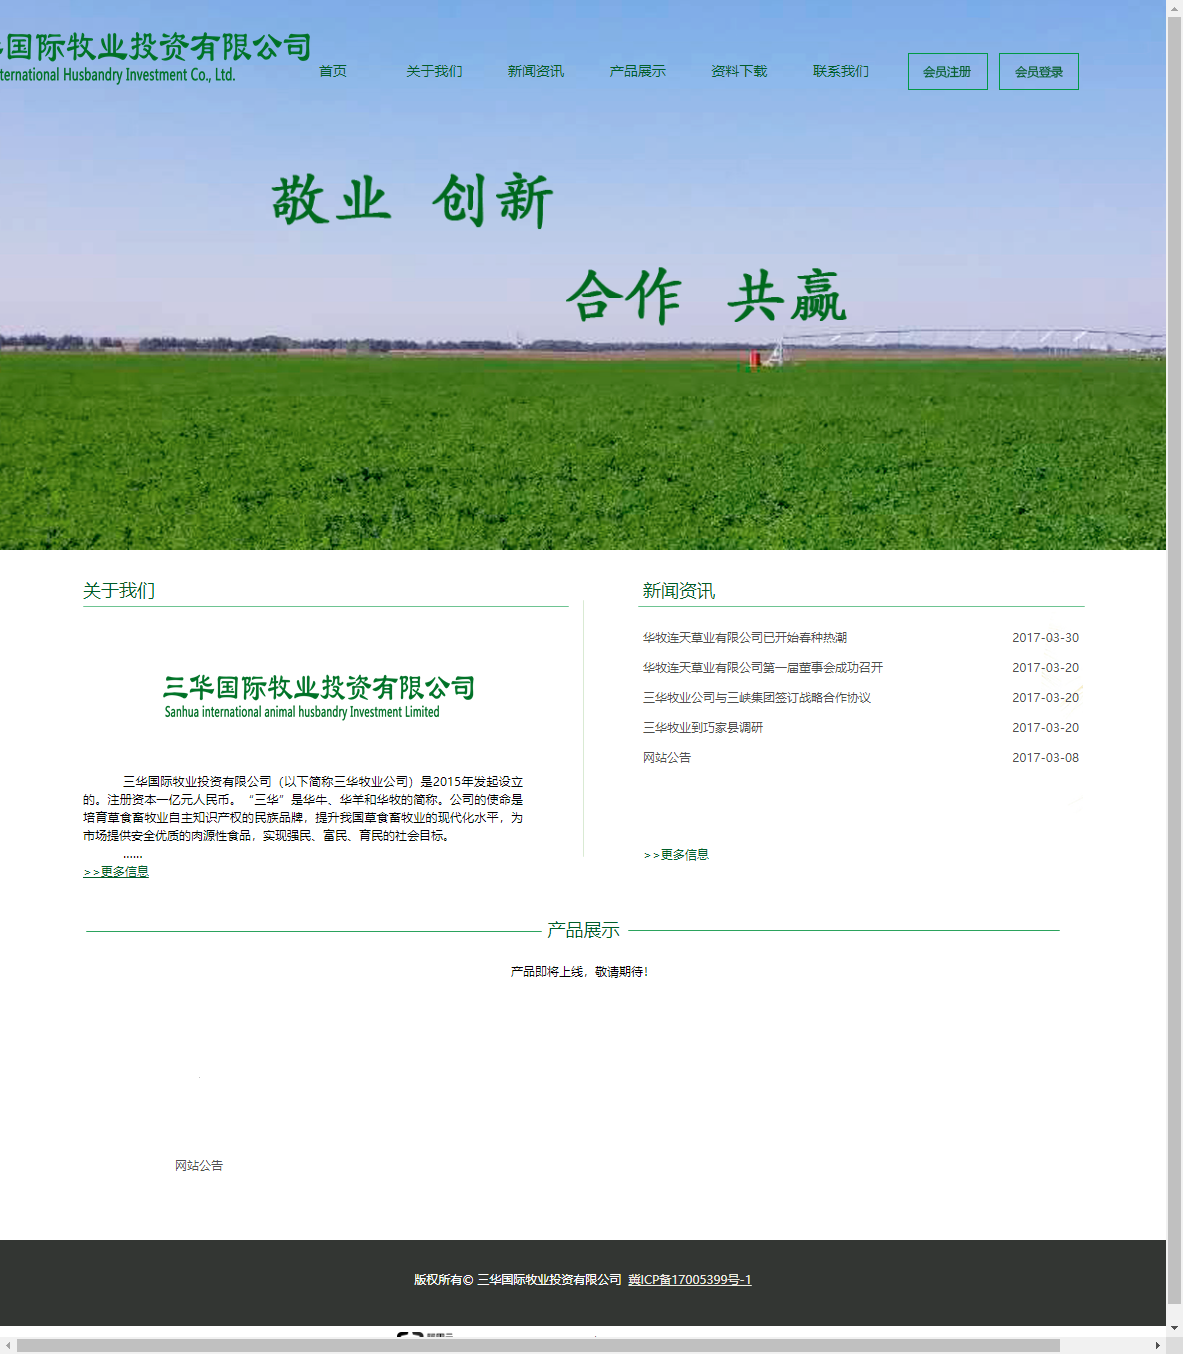 三华国际牧业投资有限公司网站案例